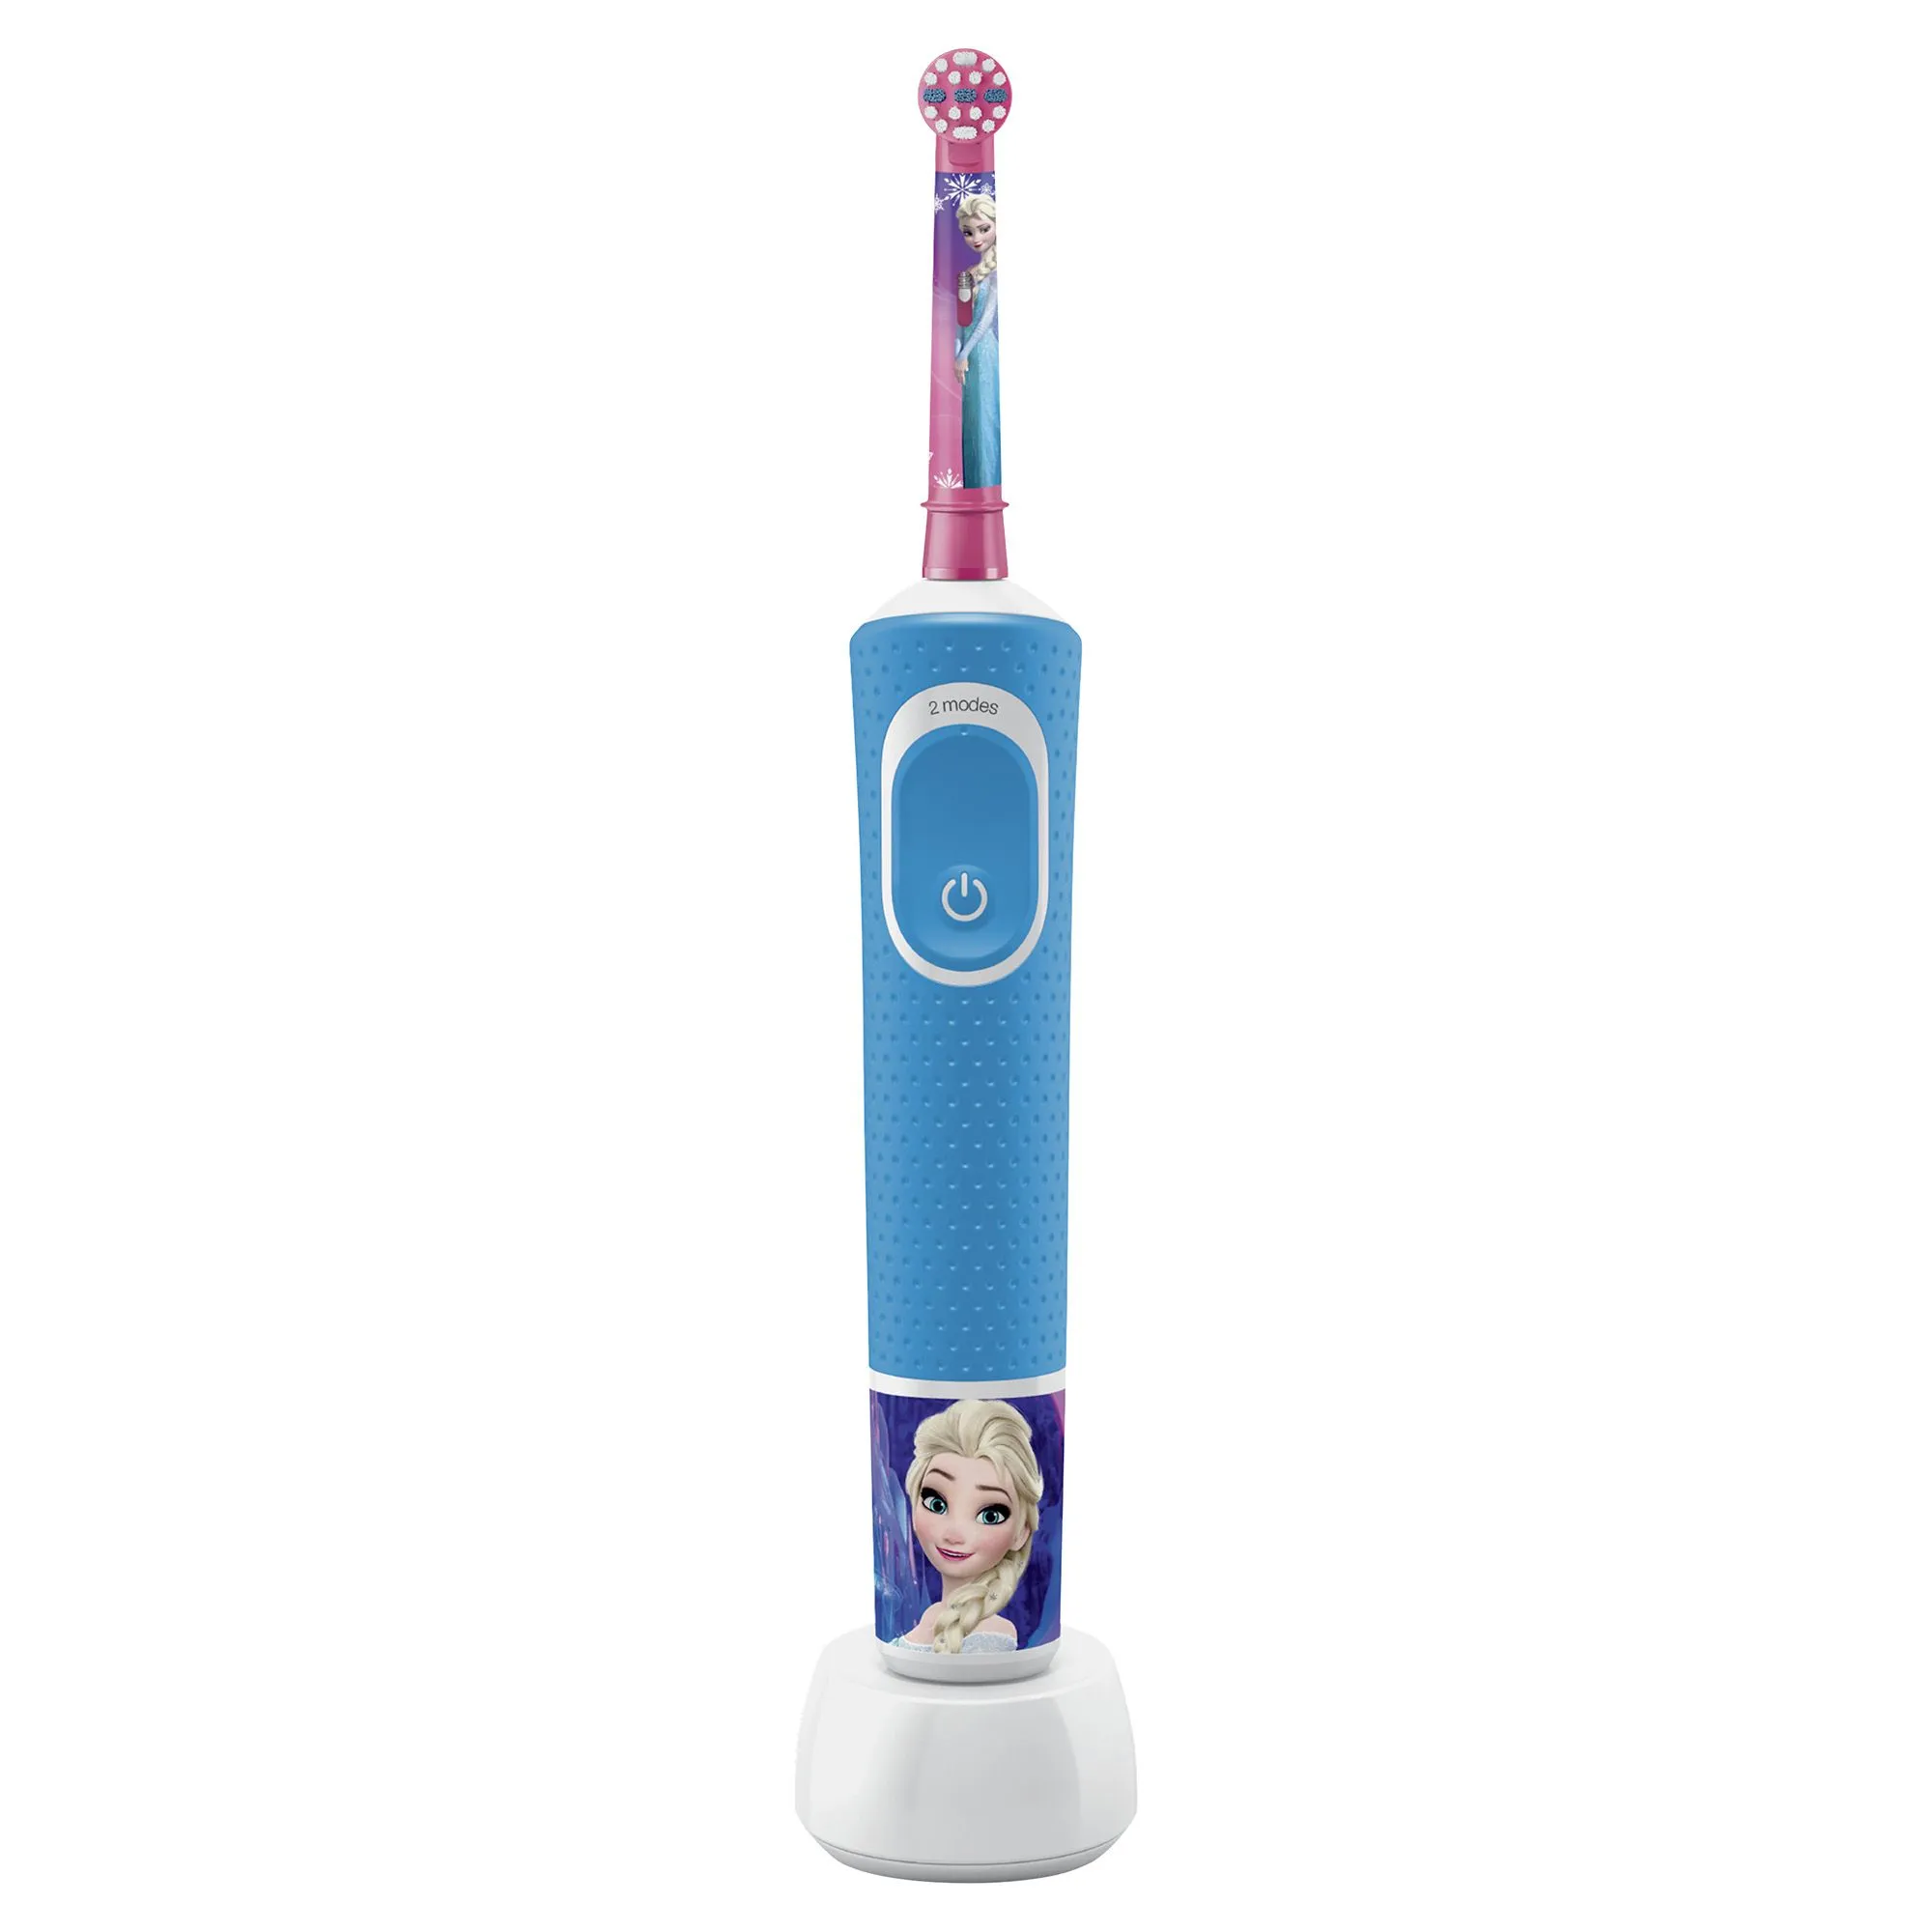 Oral-B Vitality Kids Frozen elektrický zubní kartáček + cestovní pouzdro